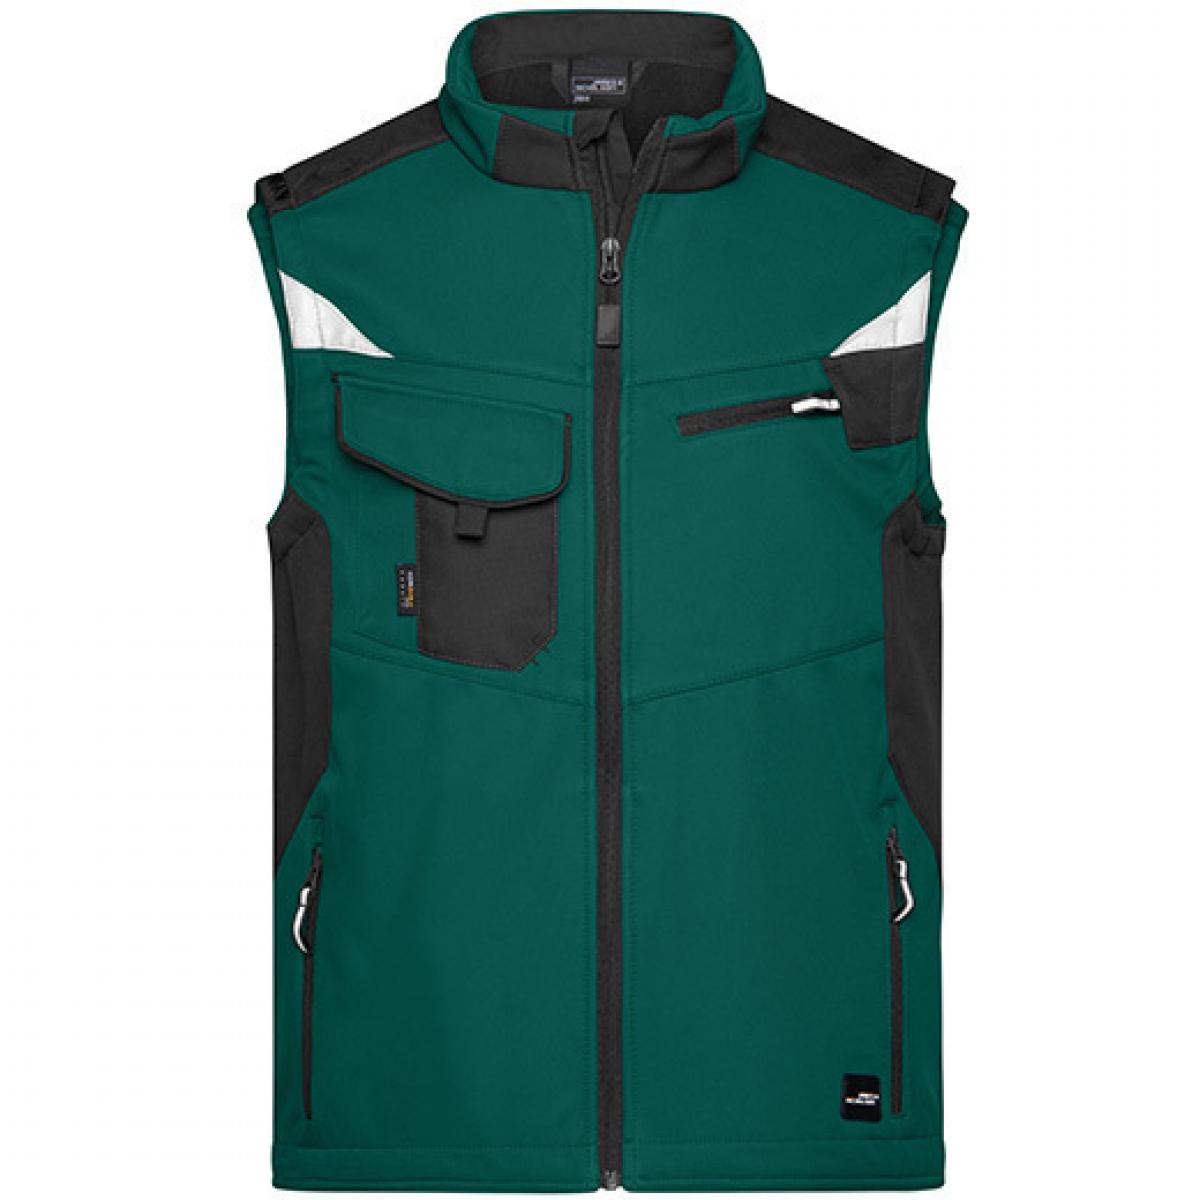 Hersteller: James+Nicholson Herstellernummer: JN845 Artikelbezeichnung: Herren Jacke, Workwear Softshell Vest -STRONG- Farbe: Dark Green/Black